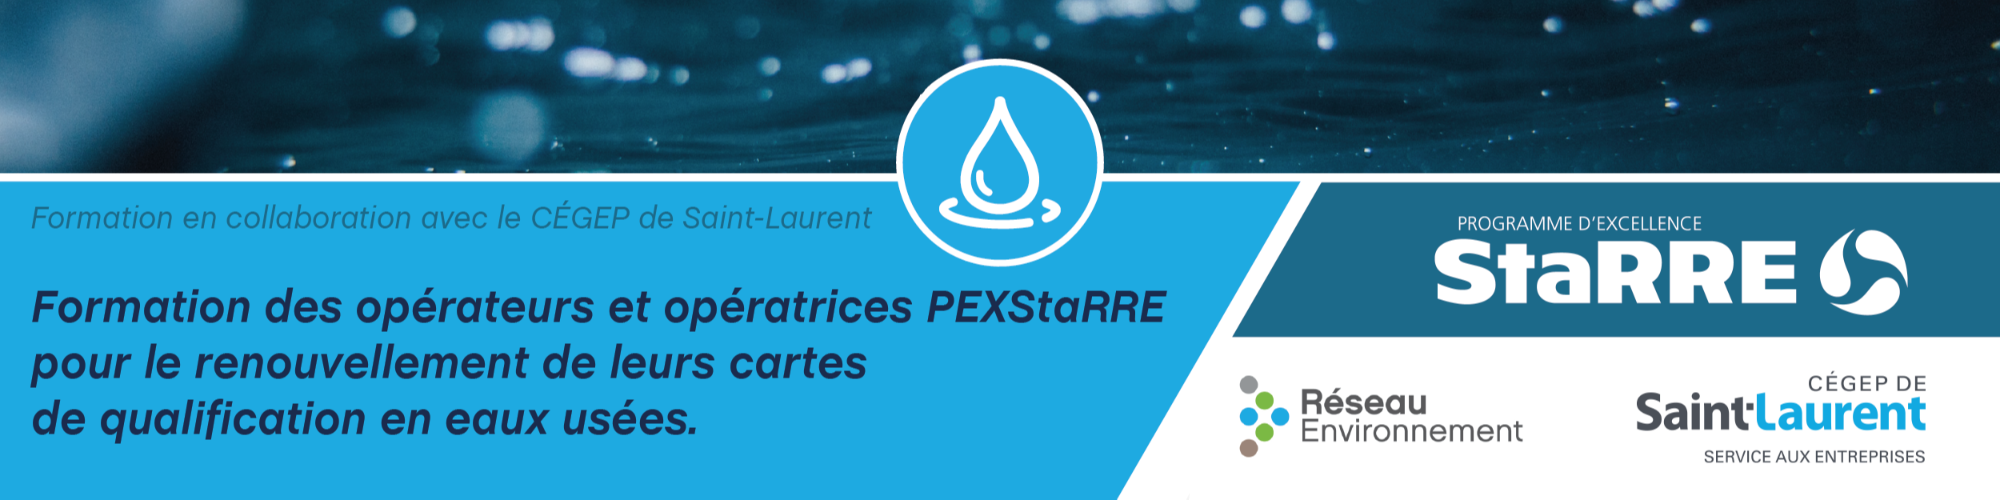 Formation des opératrices et opérateurs PEXStarre pour le renouvellement de leurs cartes de qualification en eaux usées - 3ème cohorte